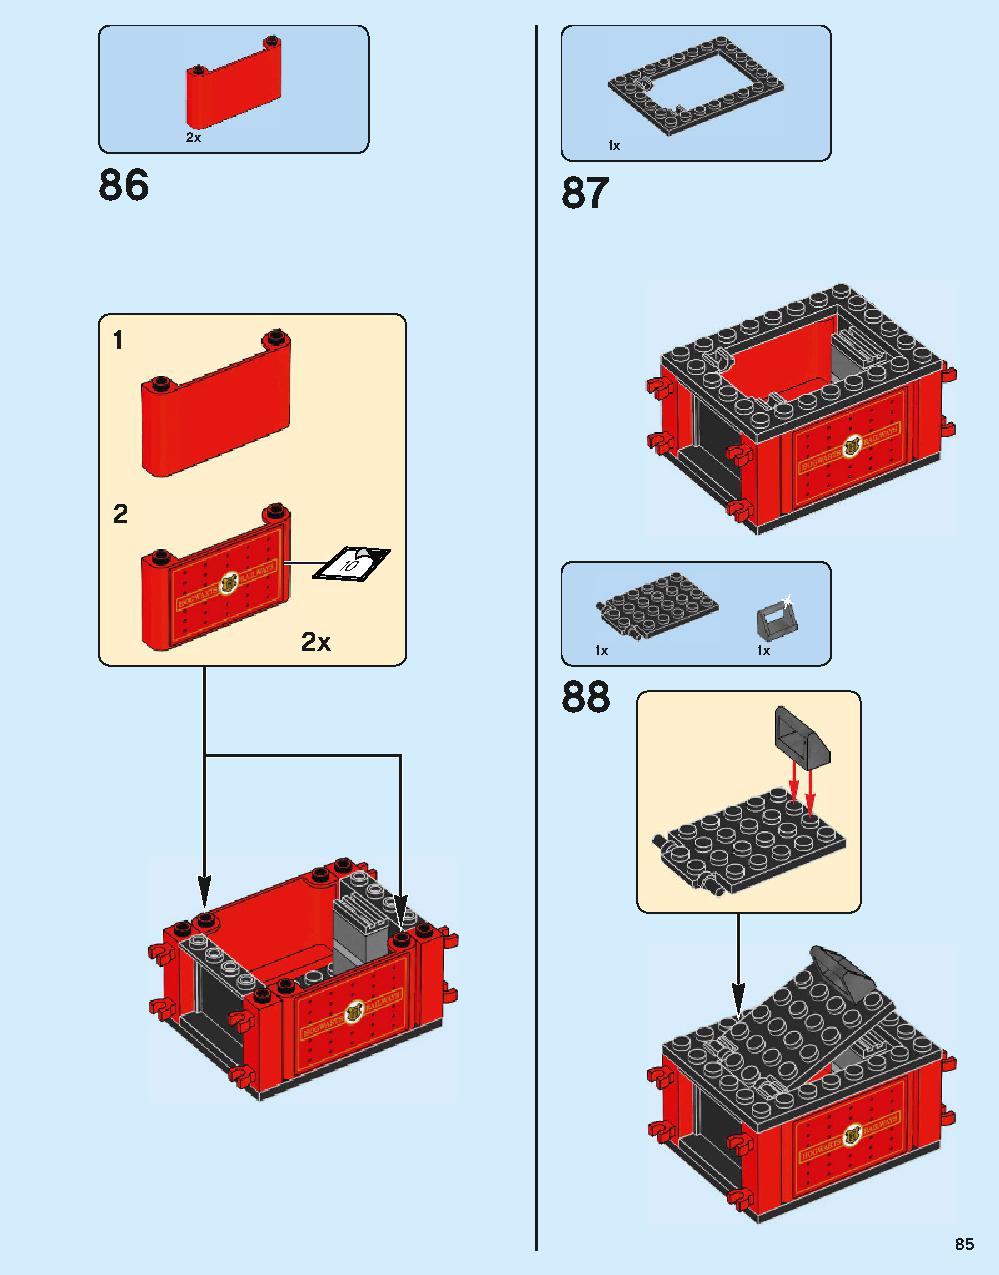 ホグワーツ特急 75955 レゴの商品情報 レゴの説明書・組立方法 85 page